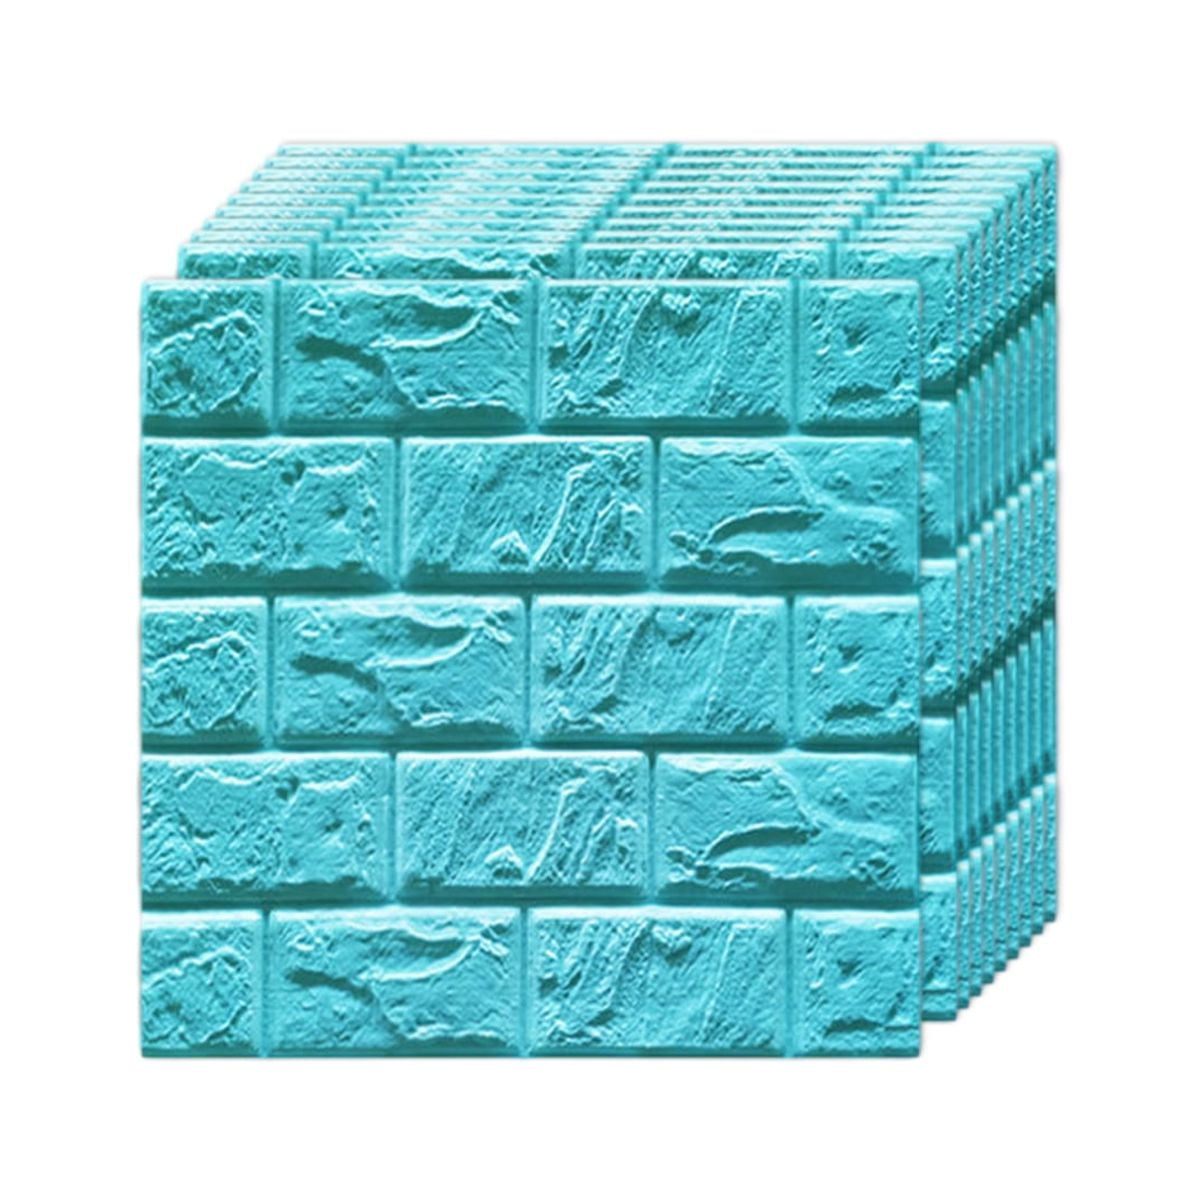 1pcs 35*30cm Wallpaper Brick 3d Wall Sticker Foam Self Adhesive